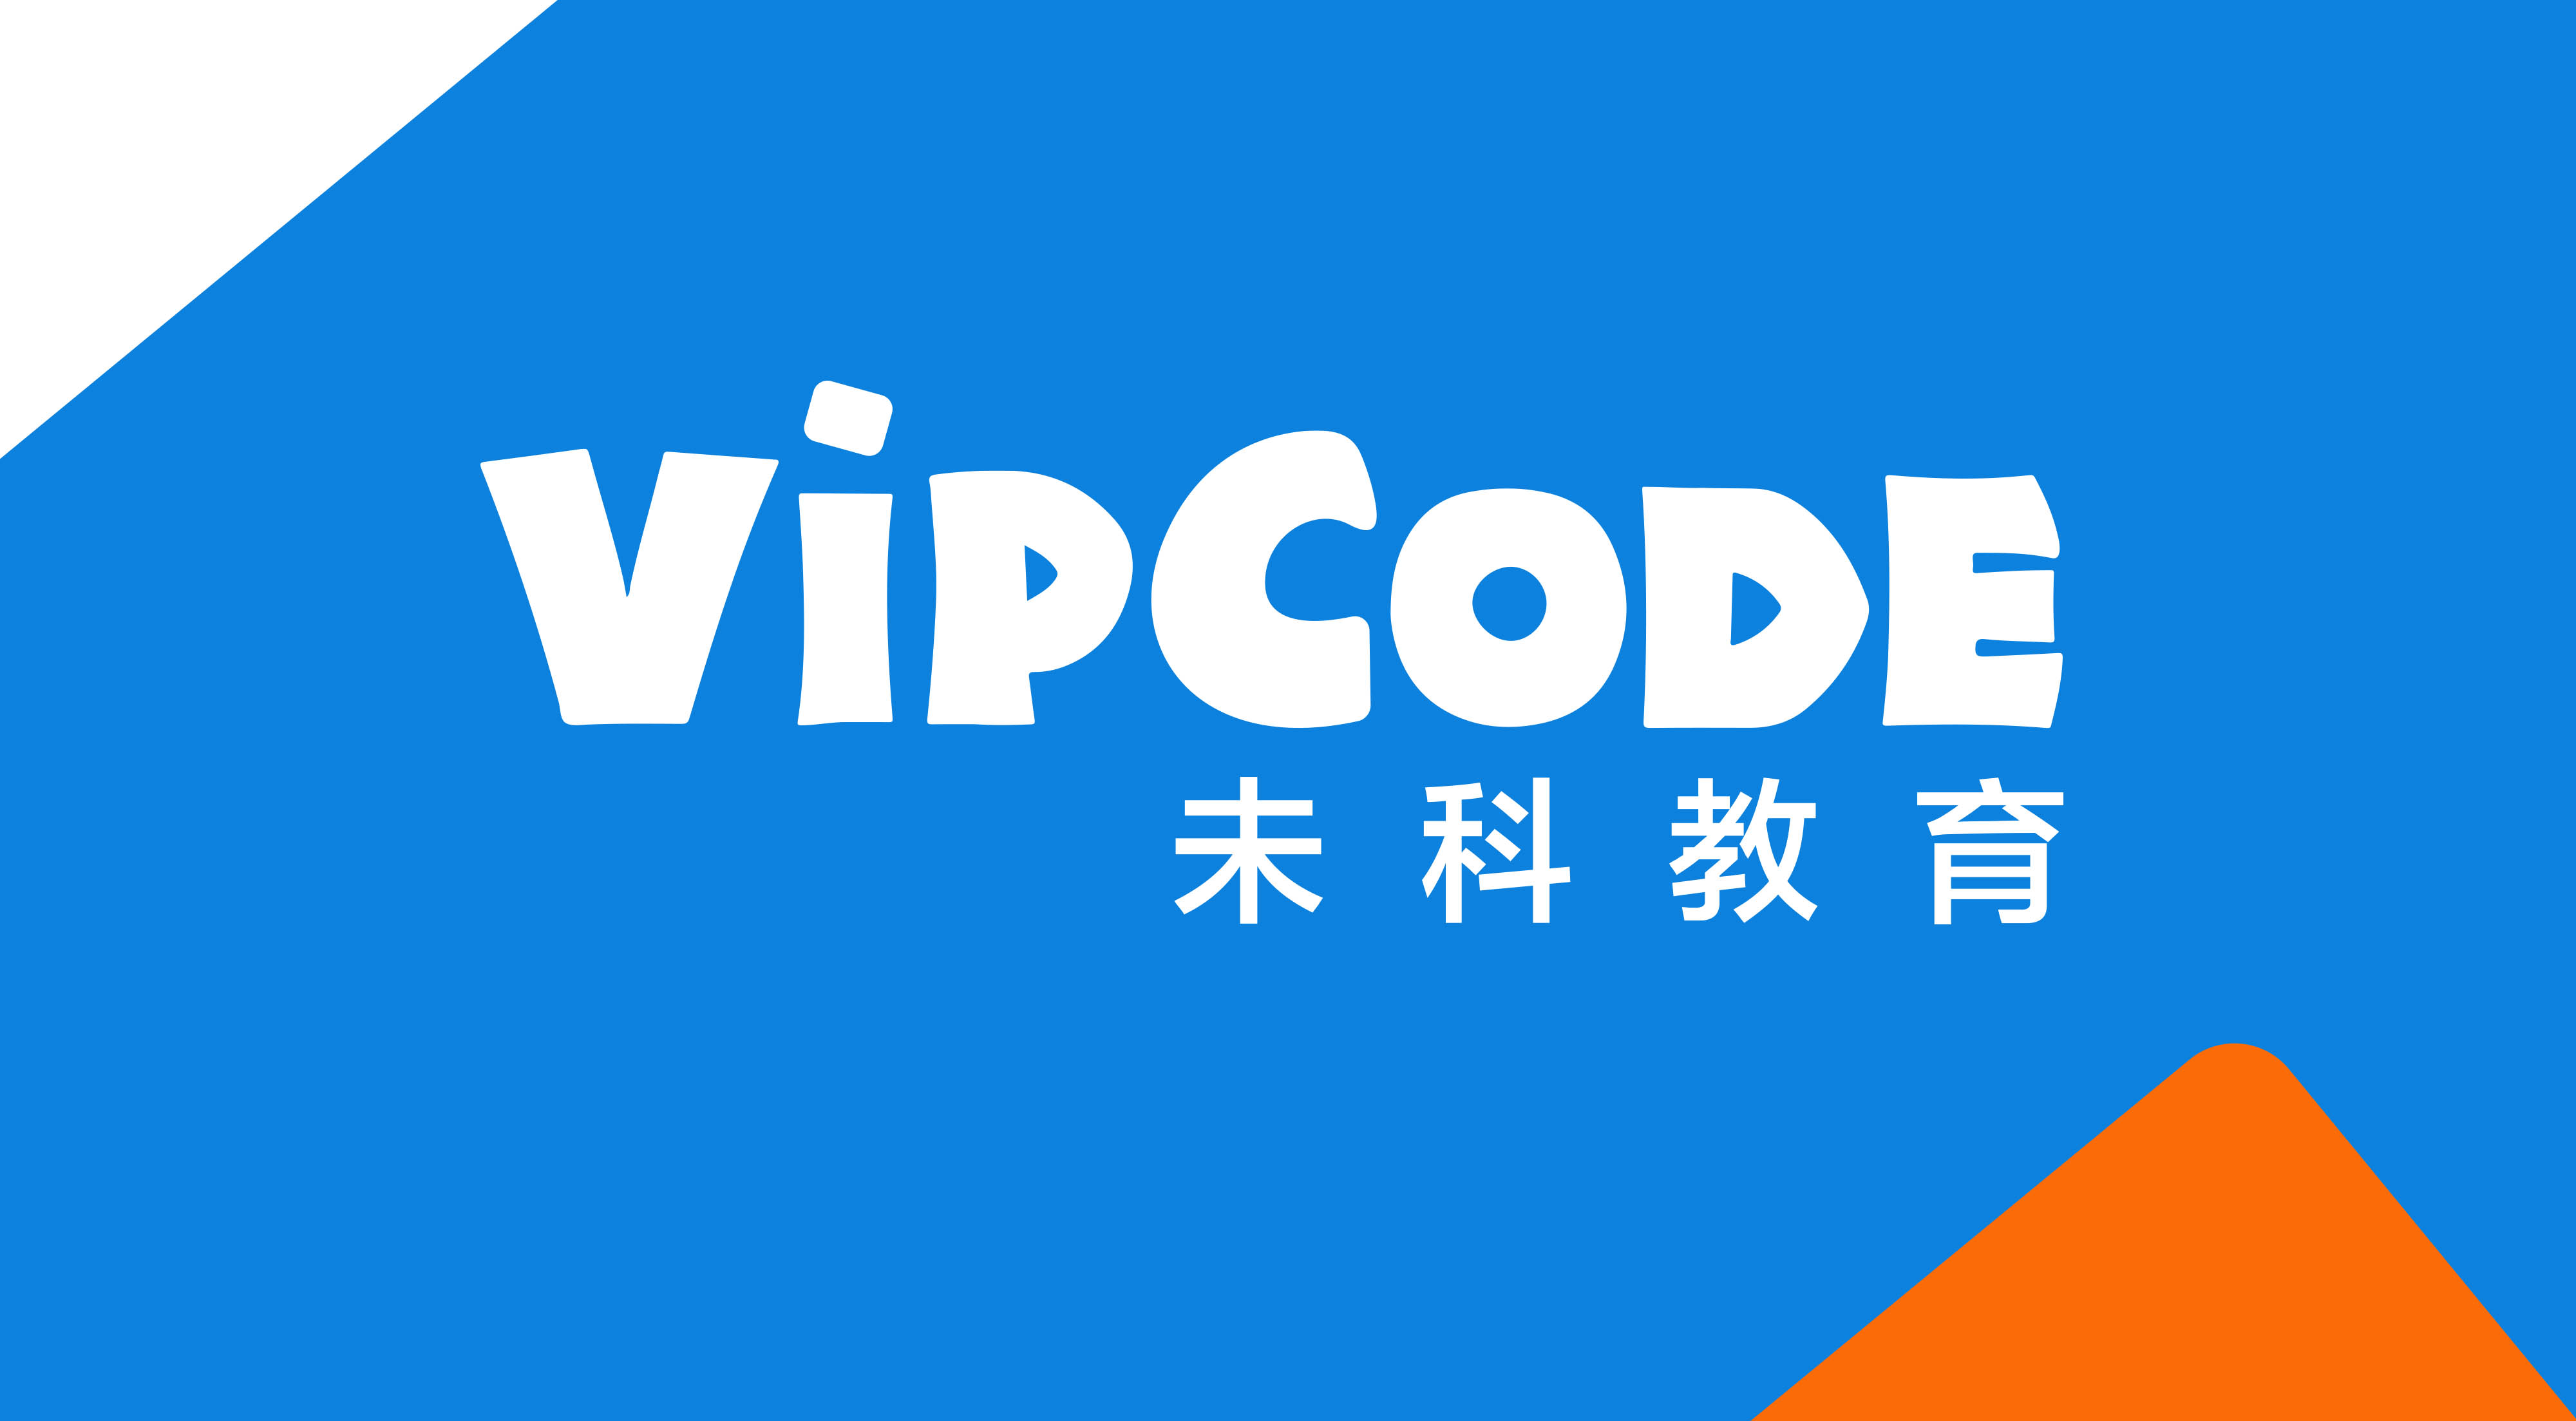 VIPCODE荣获数千万天使轮投资,少儿编程行业